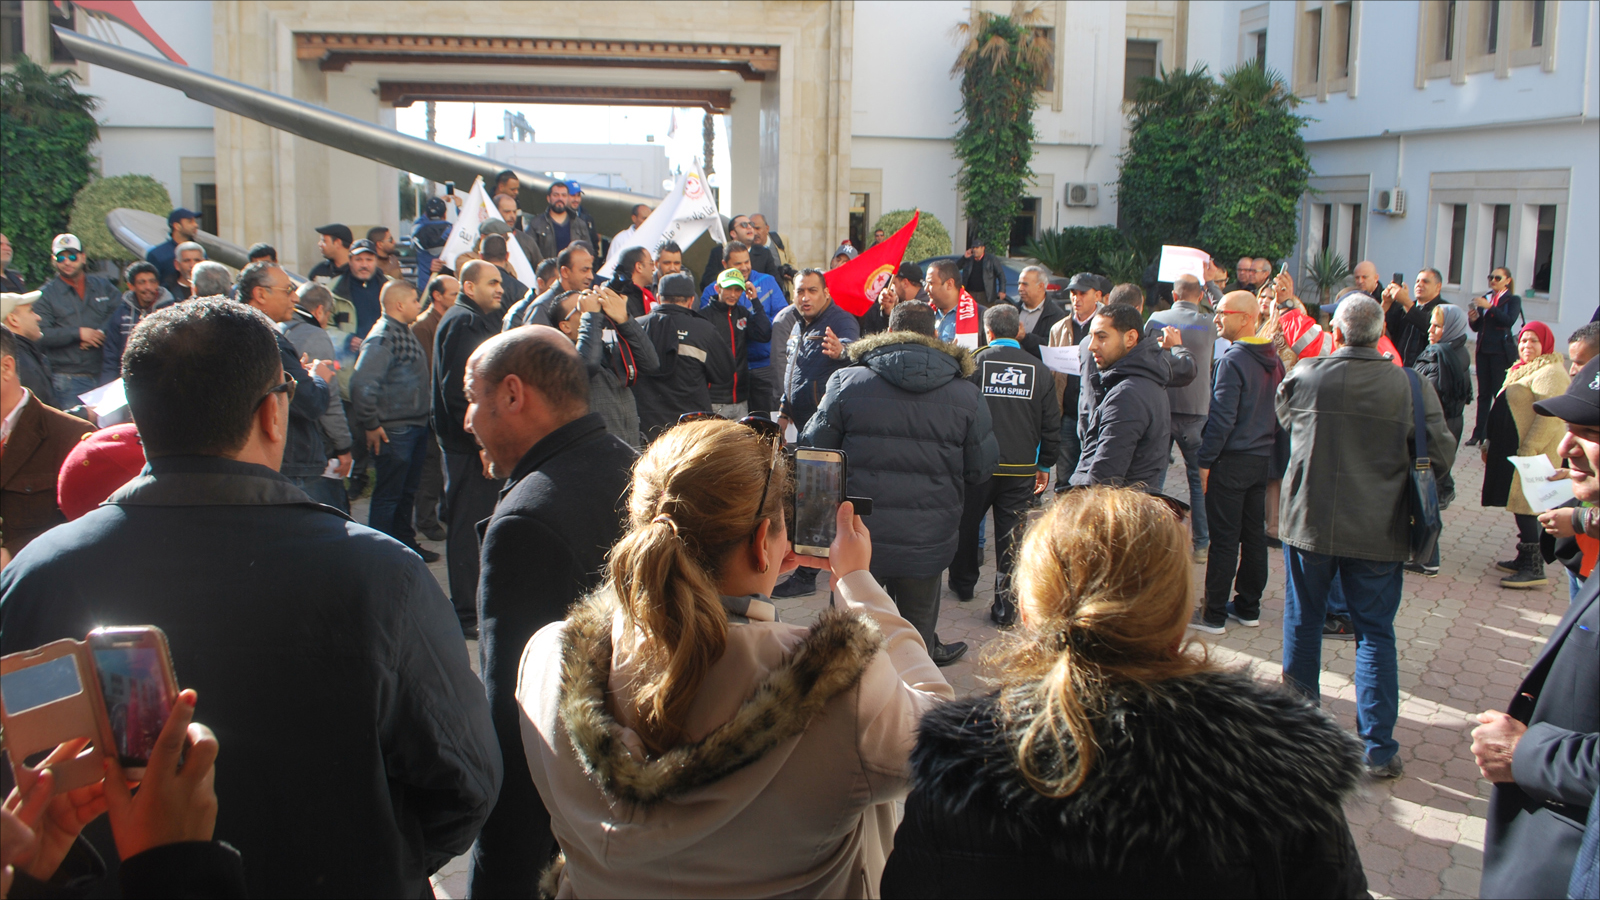 ‪نقابة موظفي الخطوط التونسية وصفت توقيع الاتفاقية بالخطة الارتجالية‬ نقابة موظفي الخطوط التونسية وصفت توقيع الاتفاقية بالخطة الارتجالية (الجزيرة)